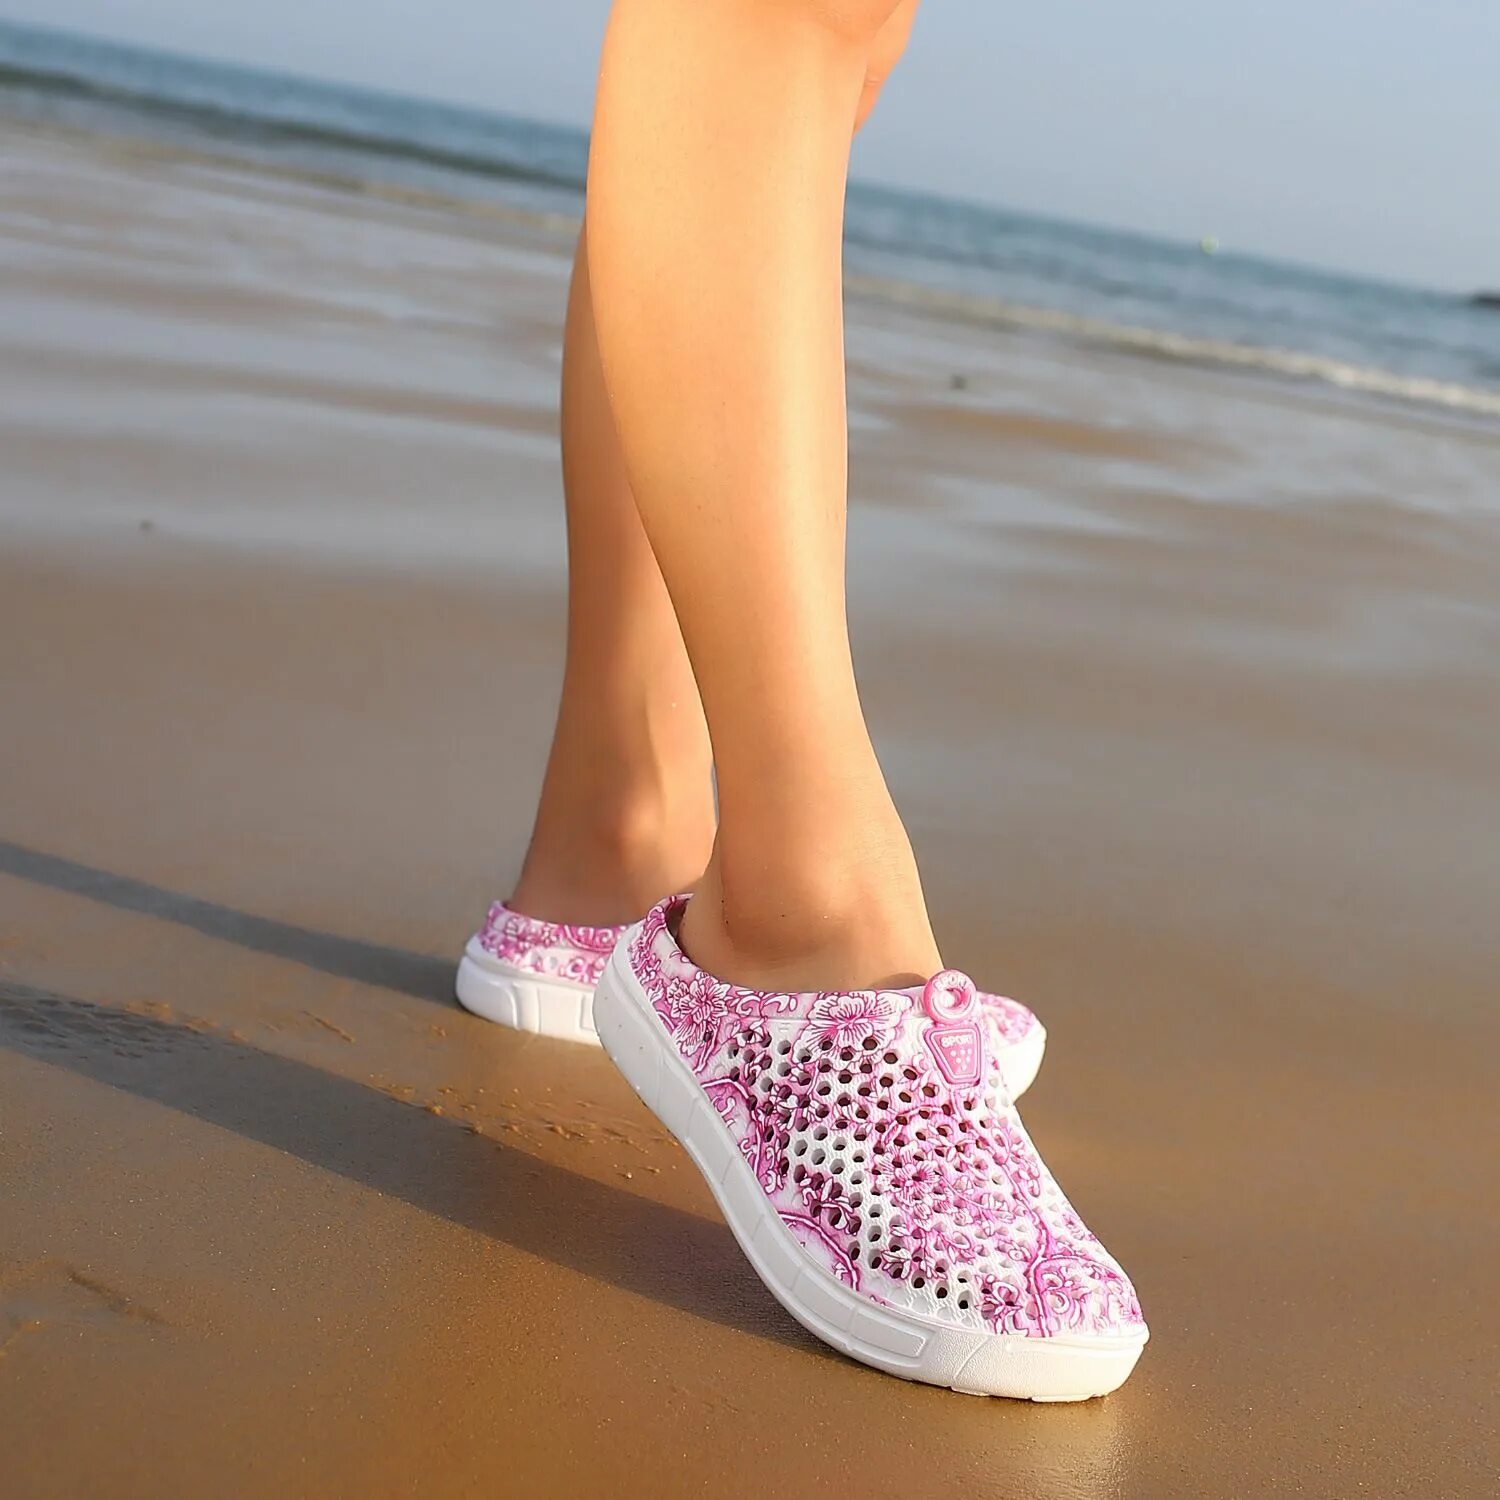 Летняя обувь для лета. Пляжная обувь женская. Обувь летняя пляжная. Тапочки летние. Летняя обувь для женщин.